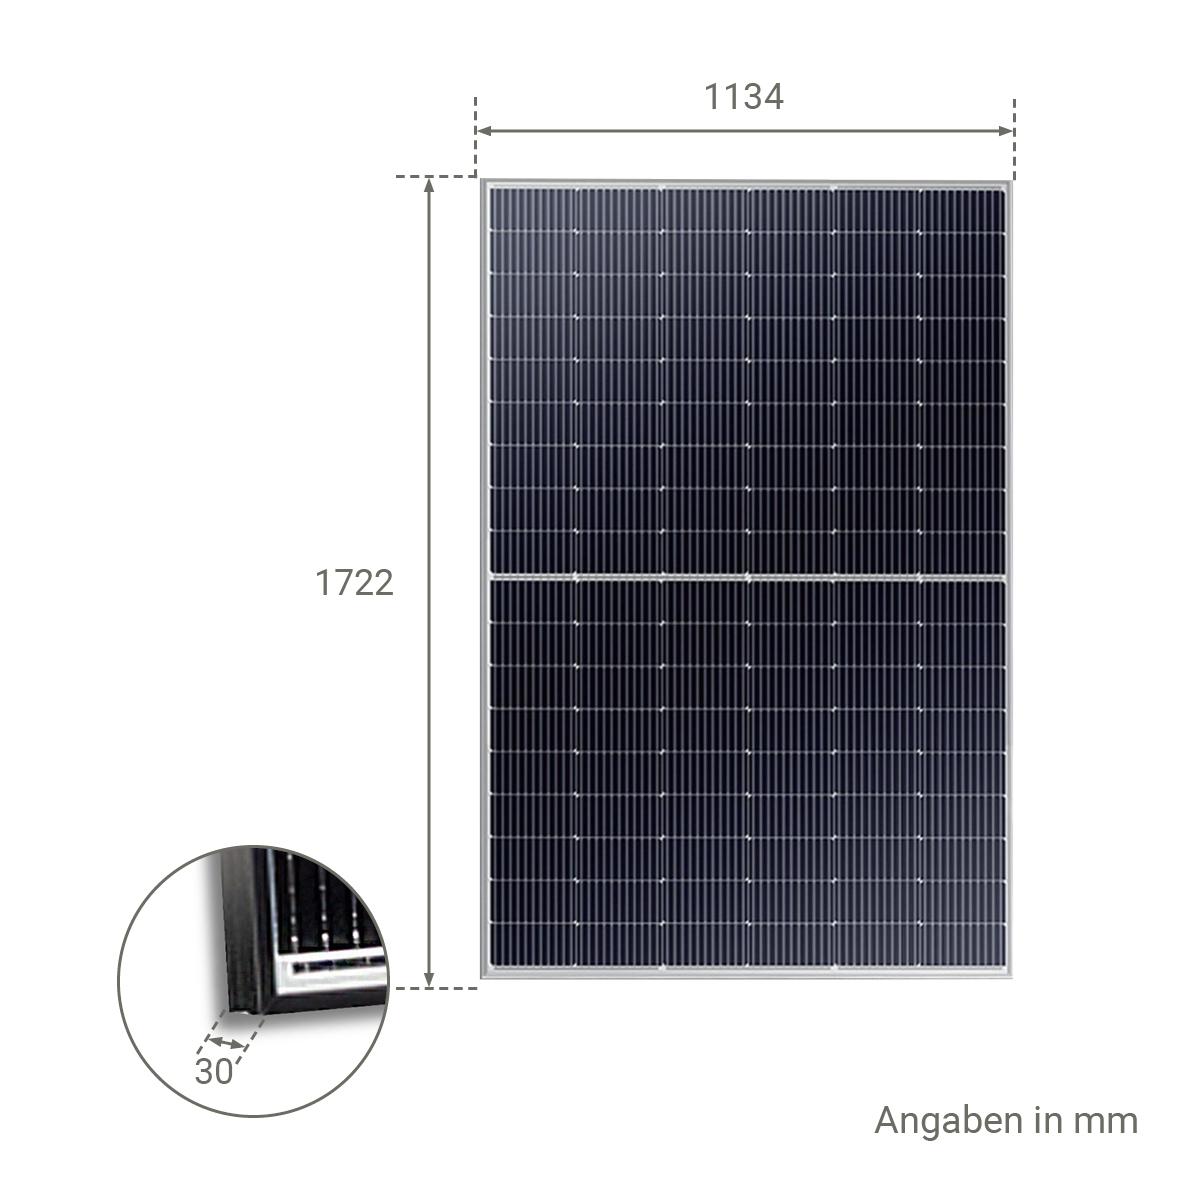 SunLink 415 Watt Black Frame Solarmodul SL5M108-415 - MwSt: 19% für Geschäftskunden 